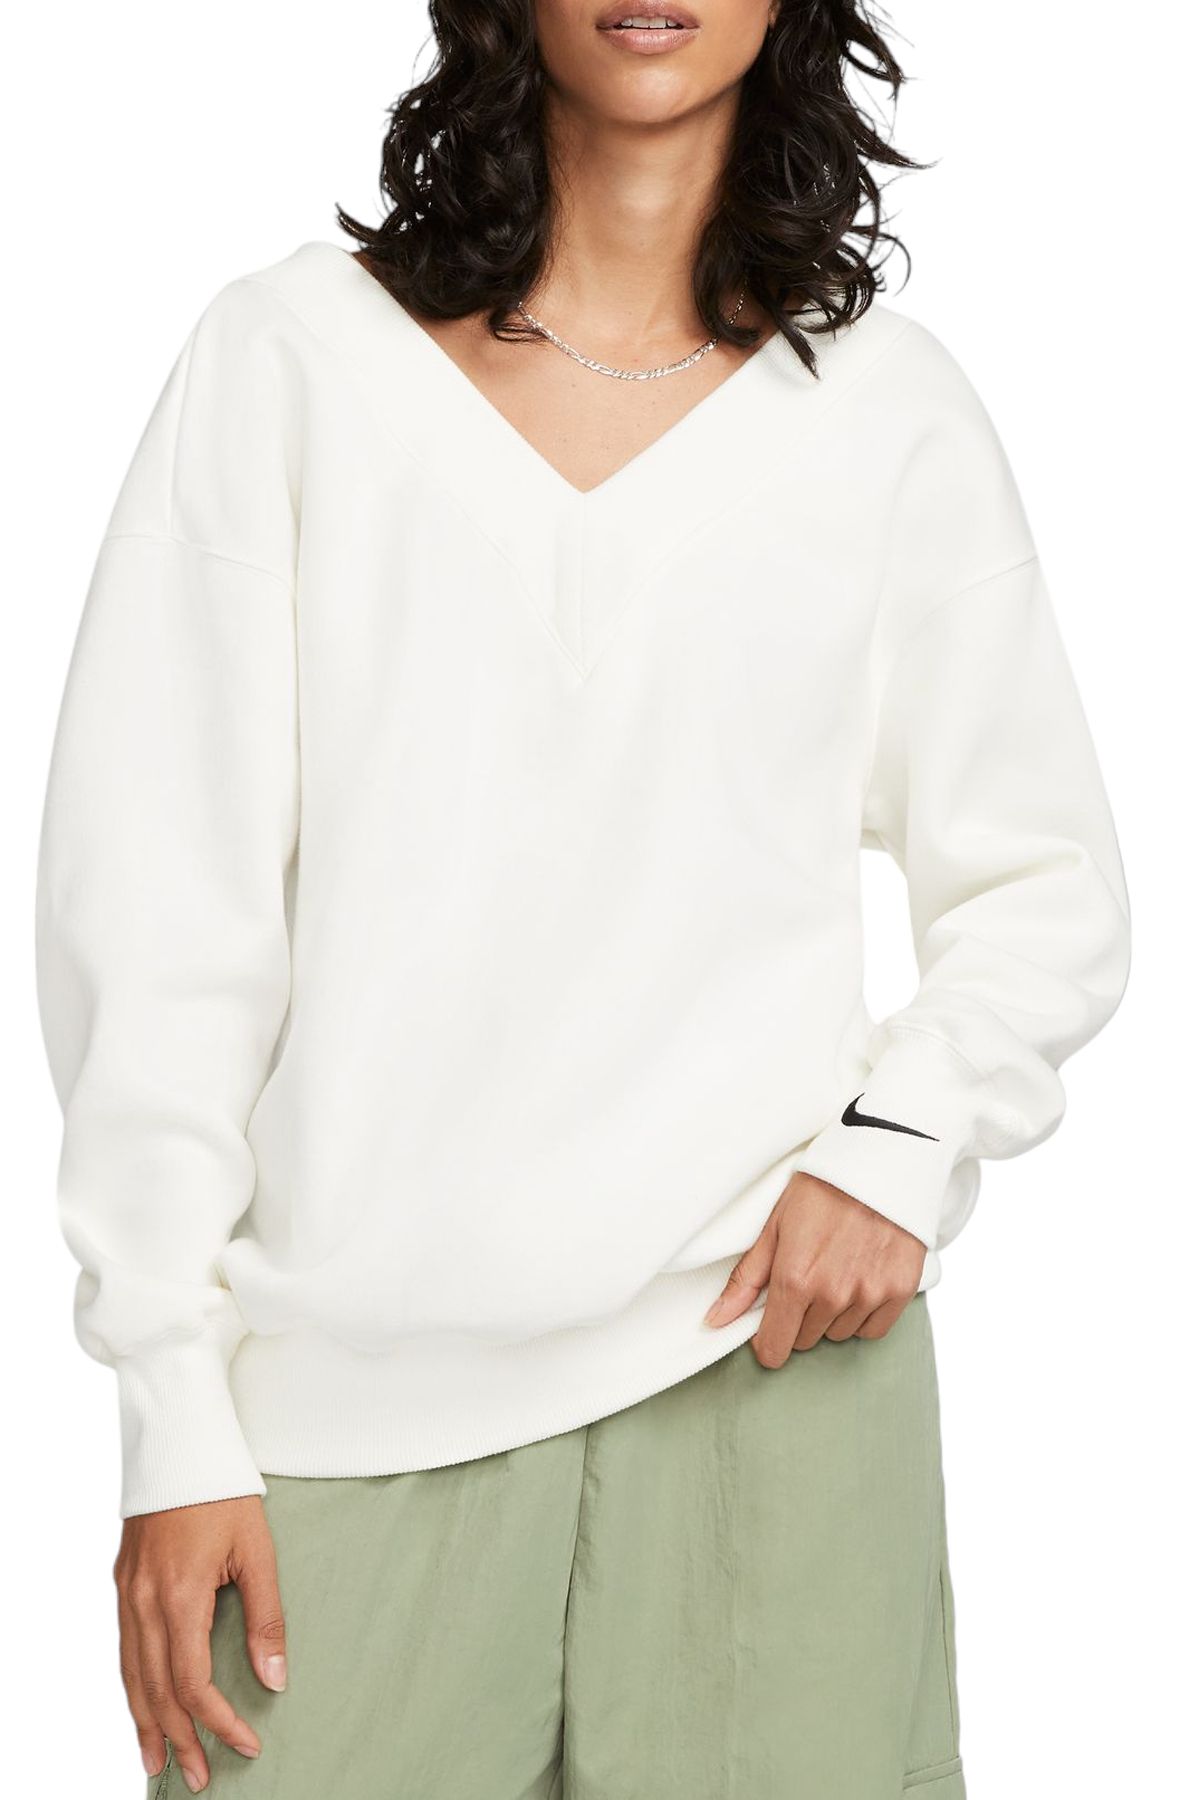 NIKE Sportswear Phoenix Fleece Oversized V-Neck Sweatshirt FB8317 133 -  Shiekh